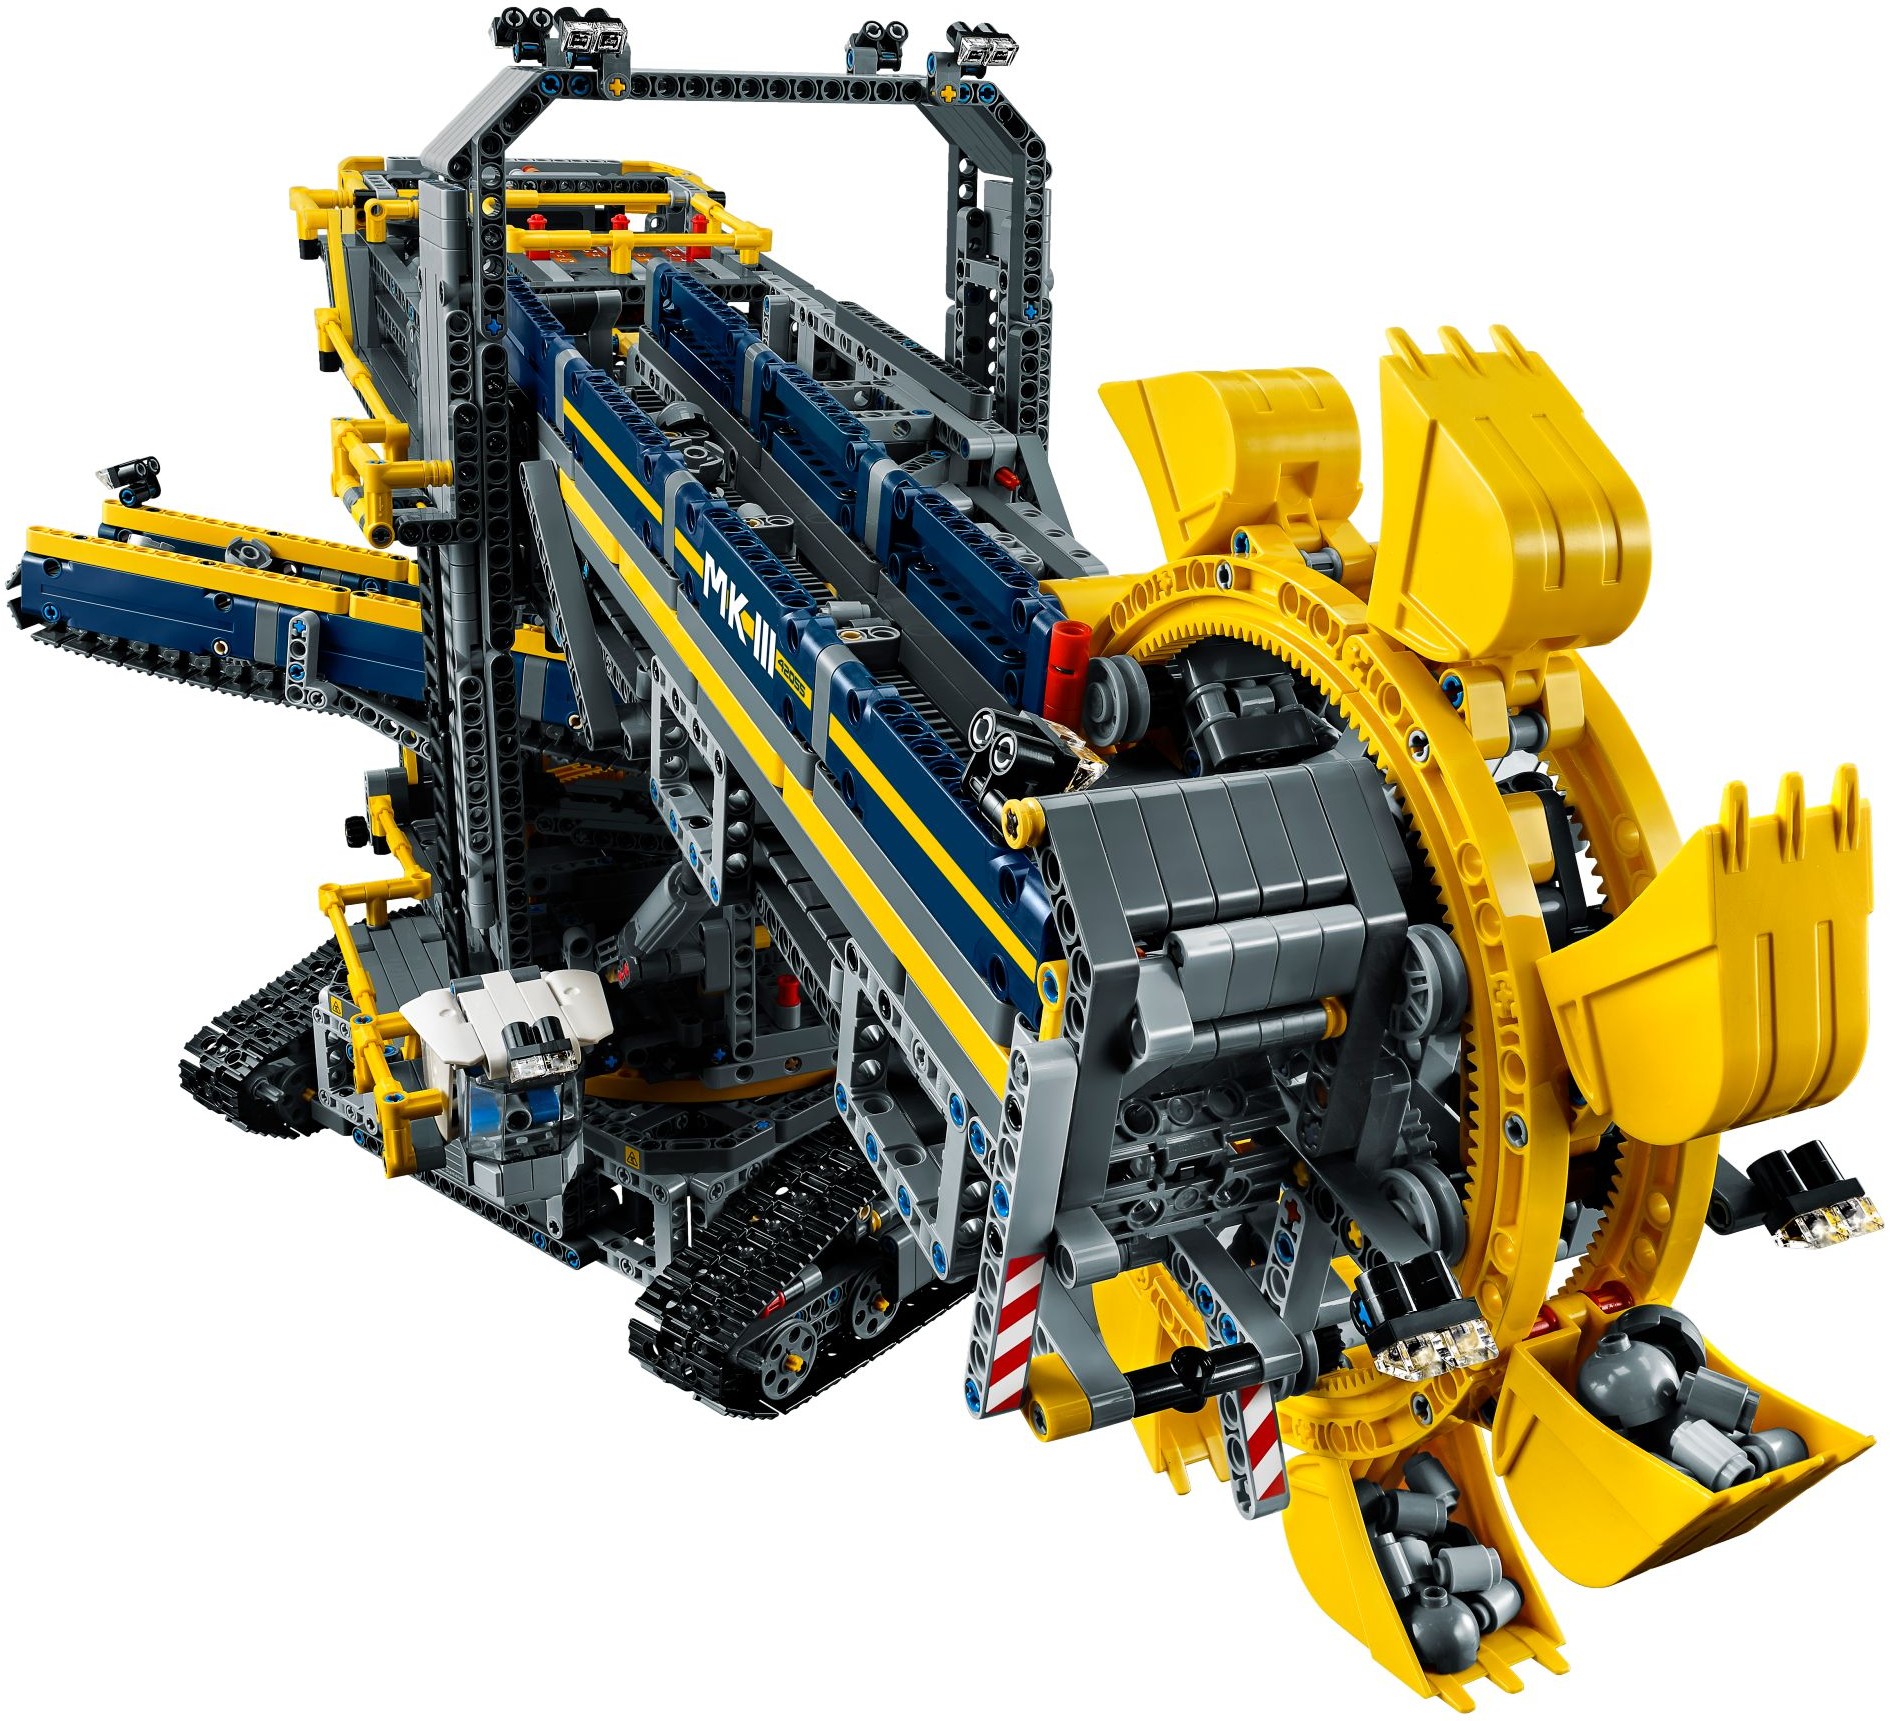 盒組聚光燈] 科技系列史上最大模型，做出現實中最大工程機械！細看42055 Bucket Wheel Excavator 巨型挖掘機